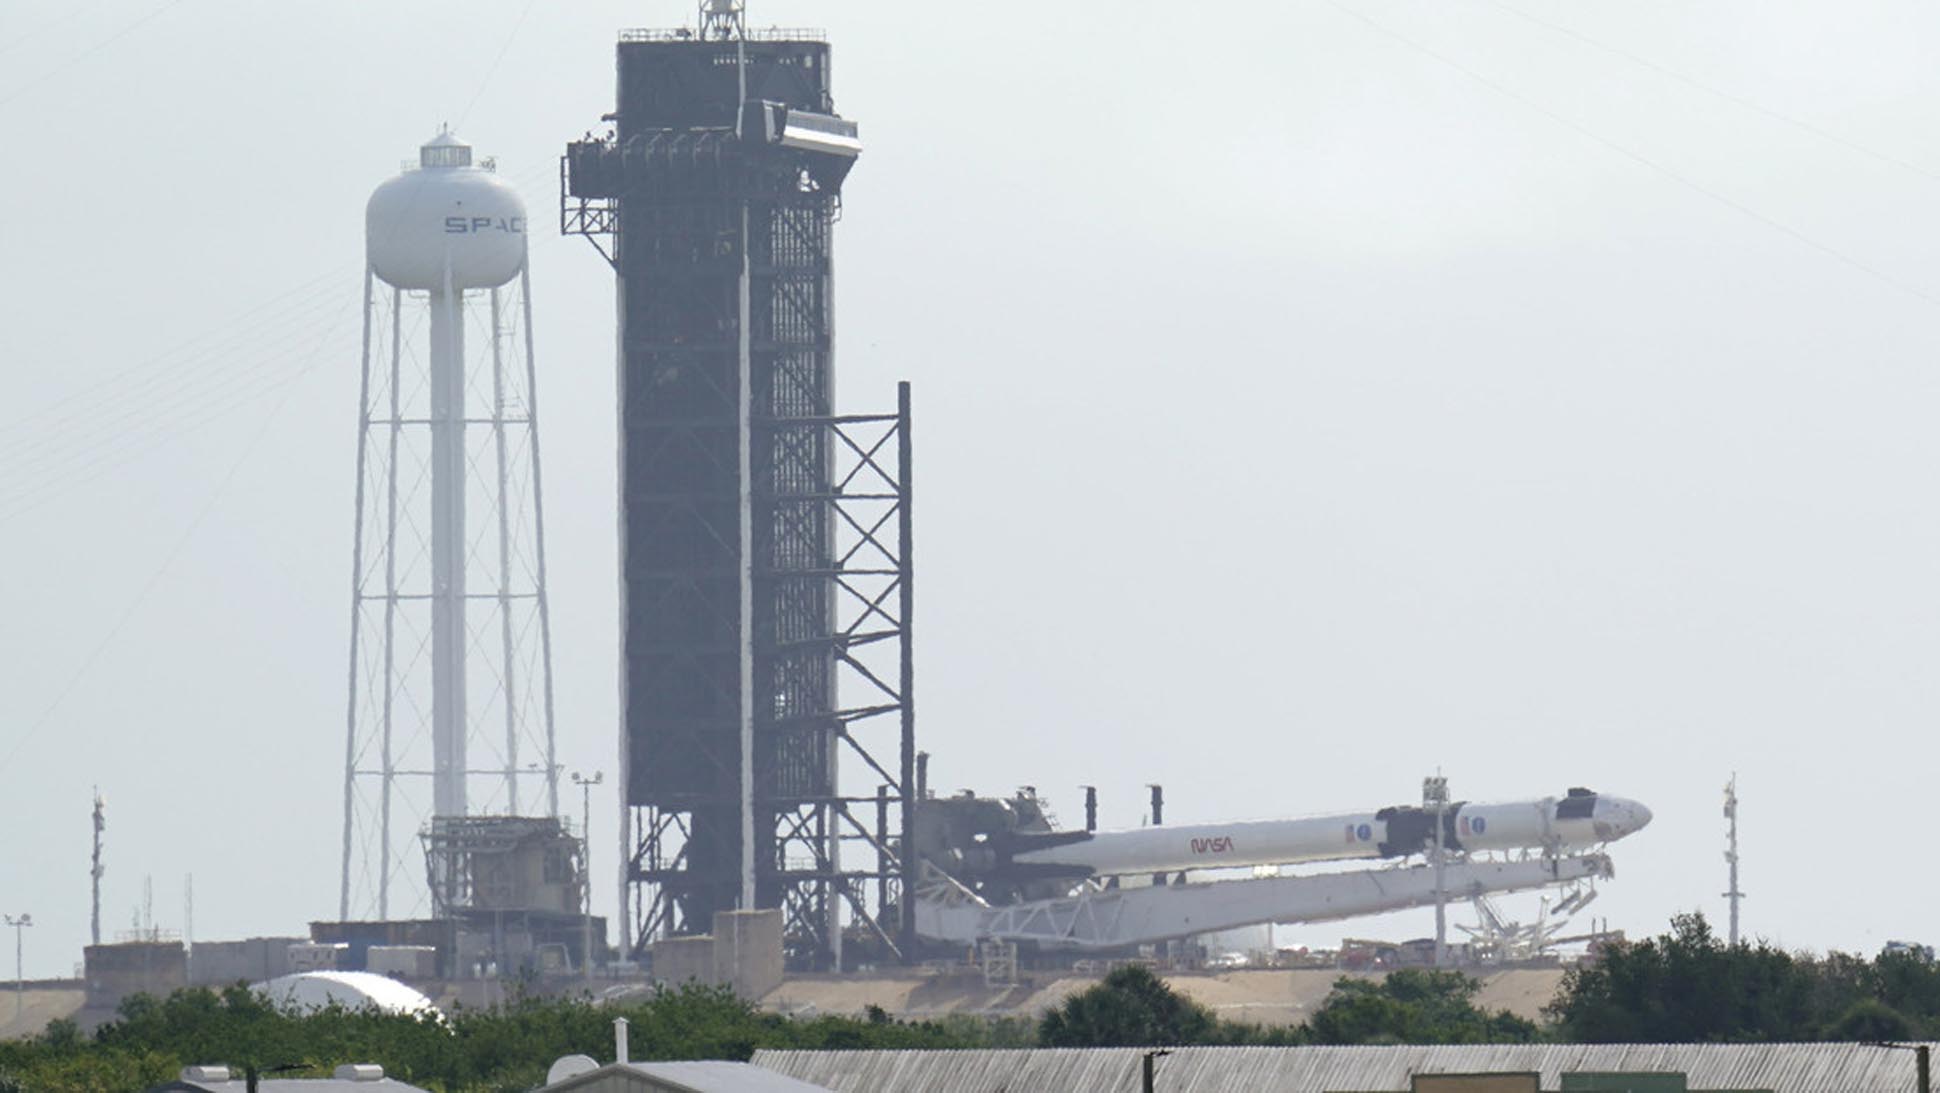  SpaceX permite a compañía privada poner en órbita a astronautas